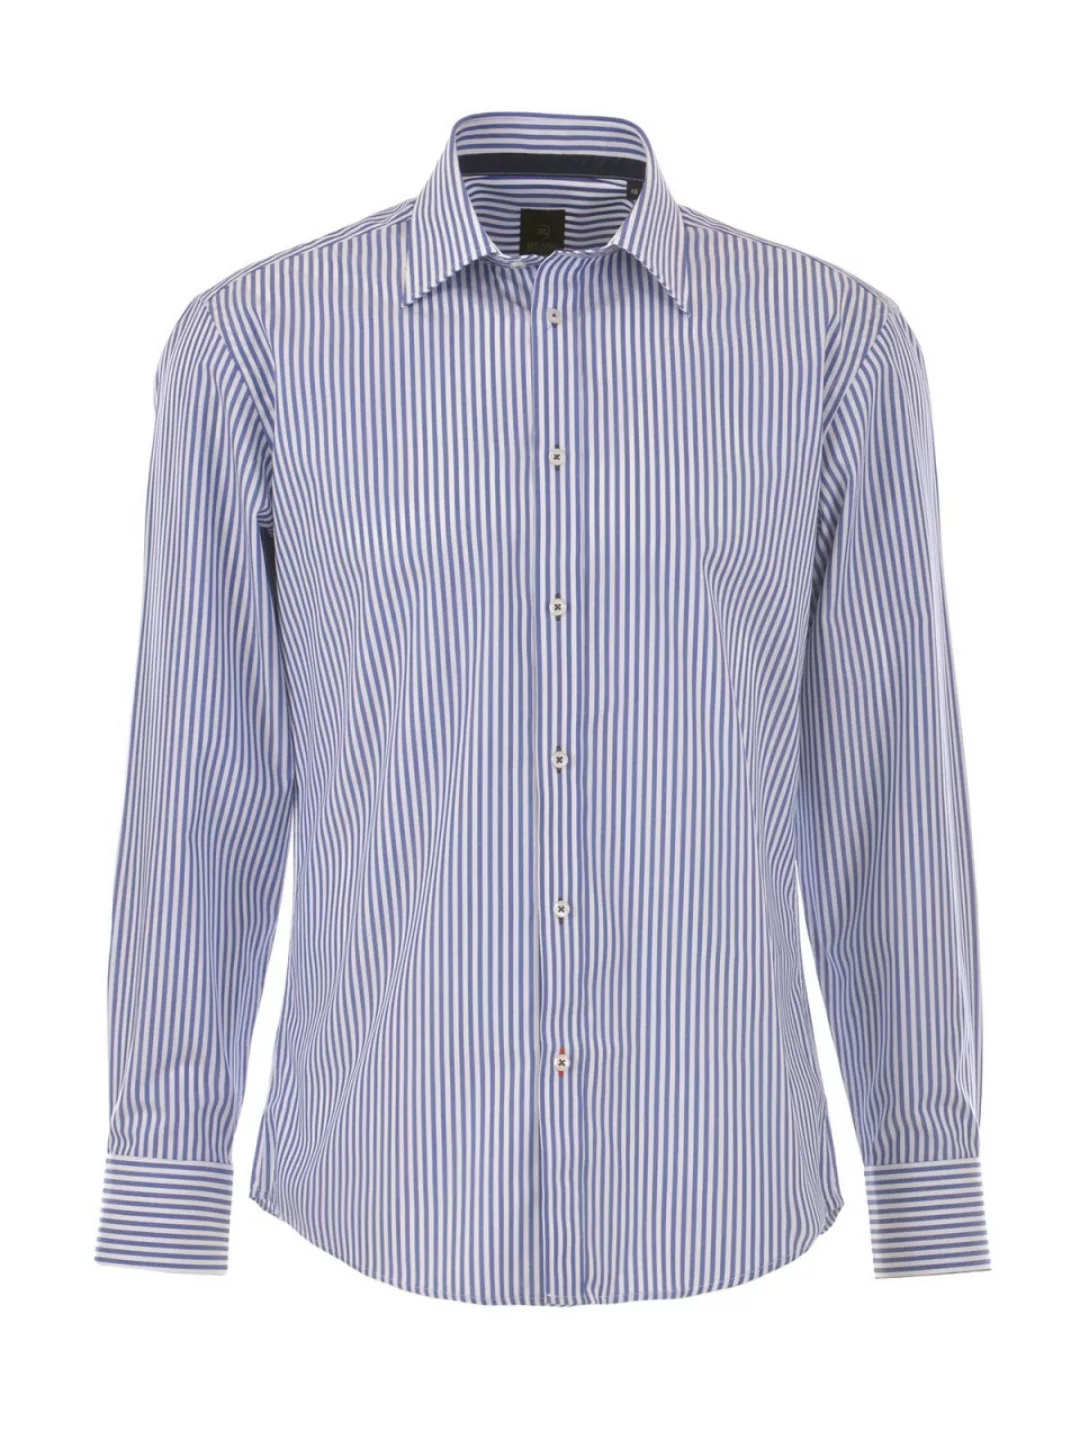 MILANO ITALY Herren Hemd, blau-weiß gestreift günstig online kaufen